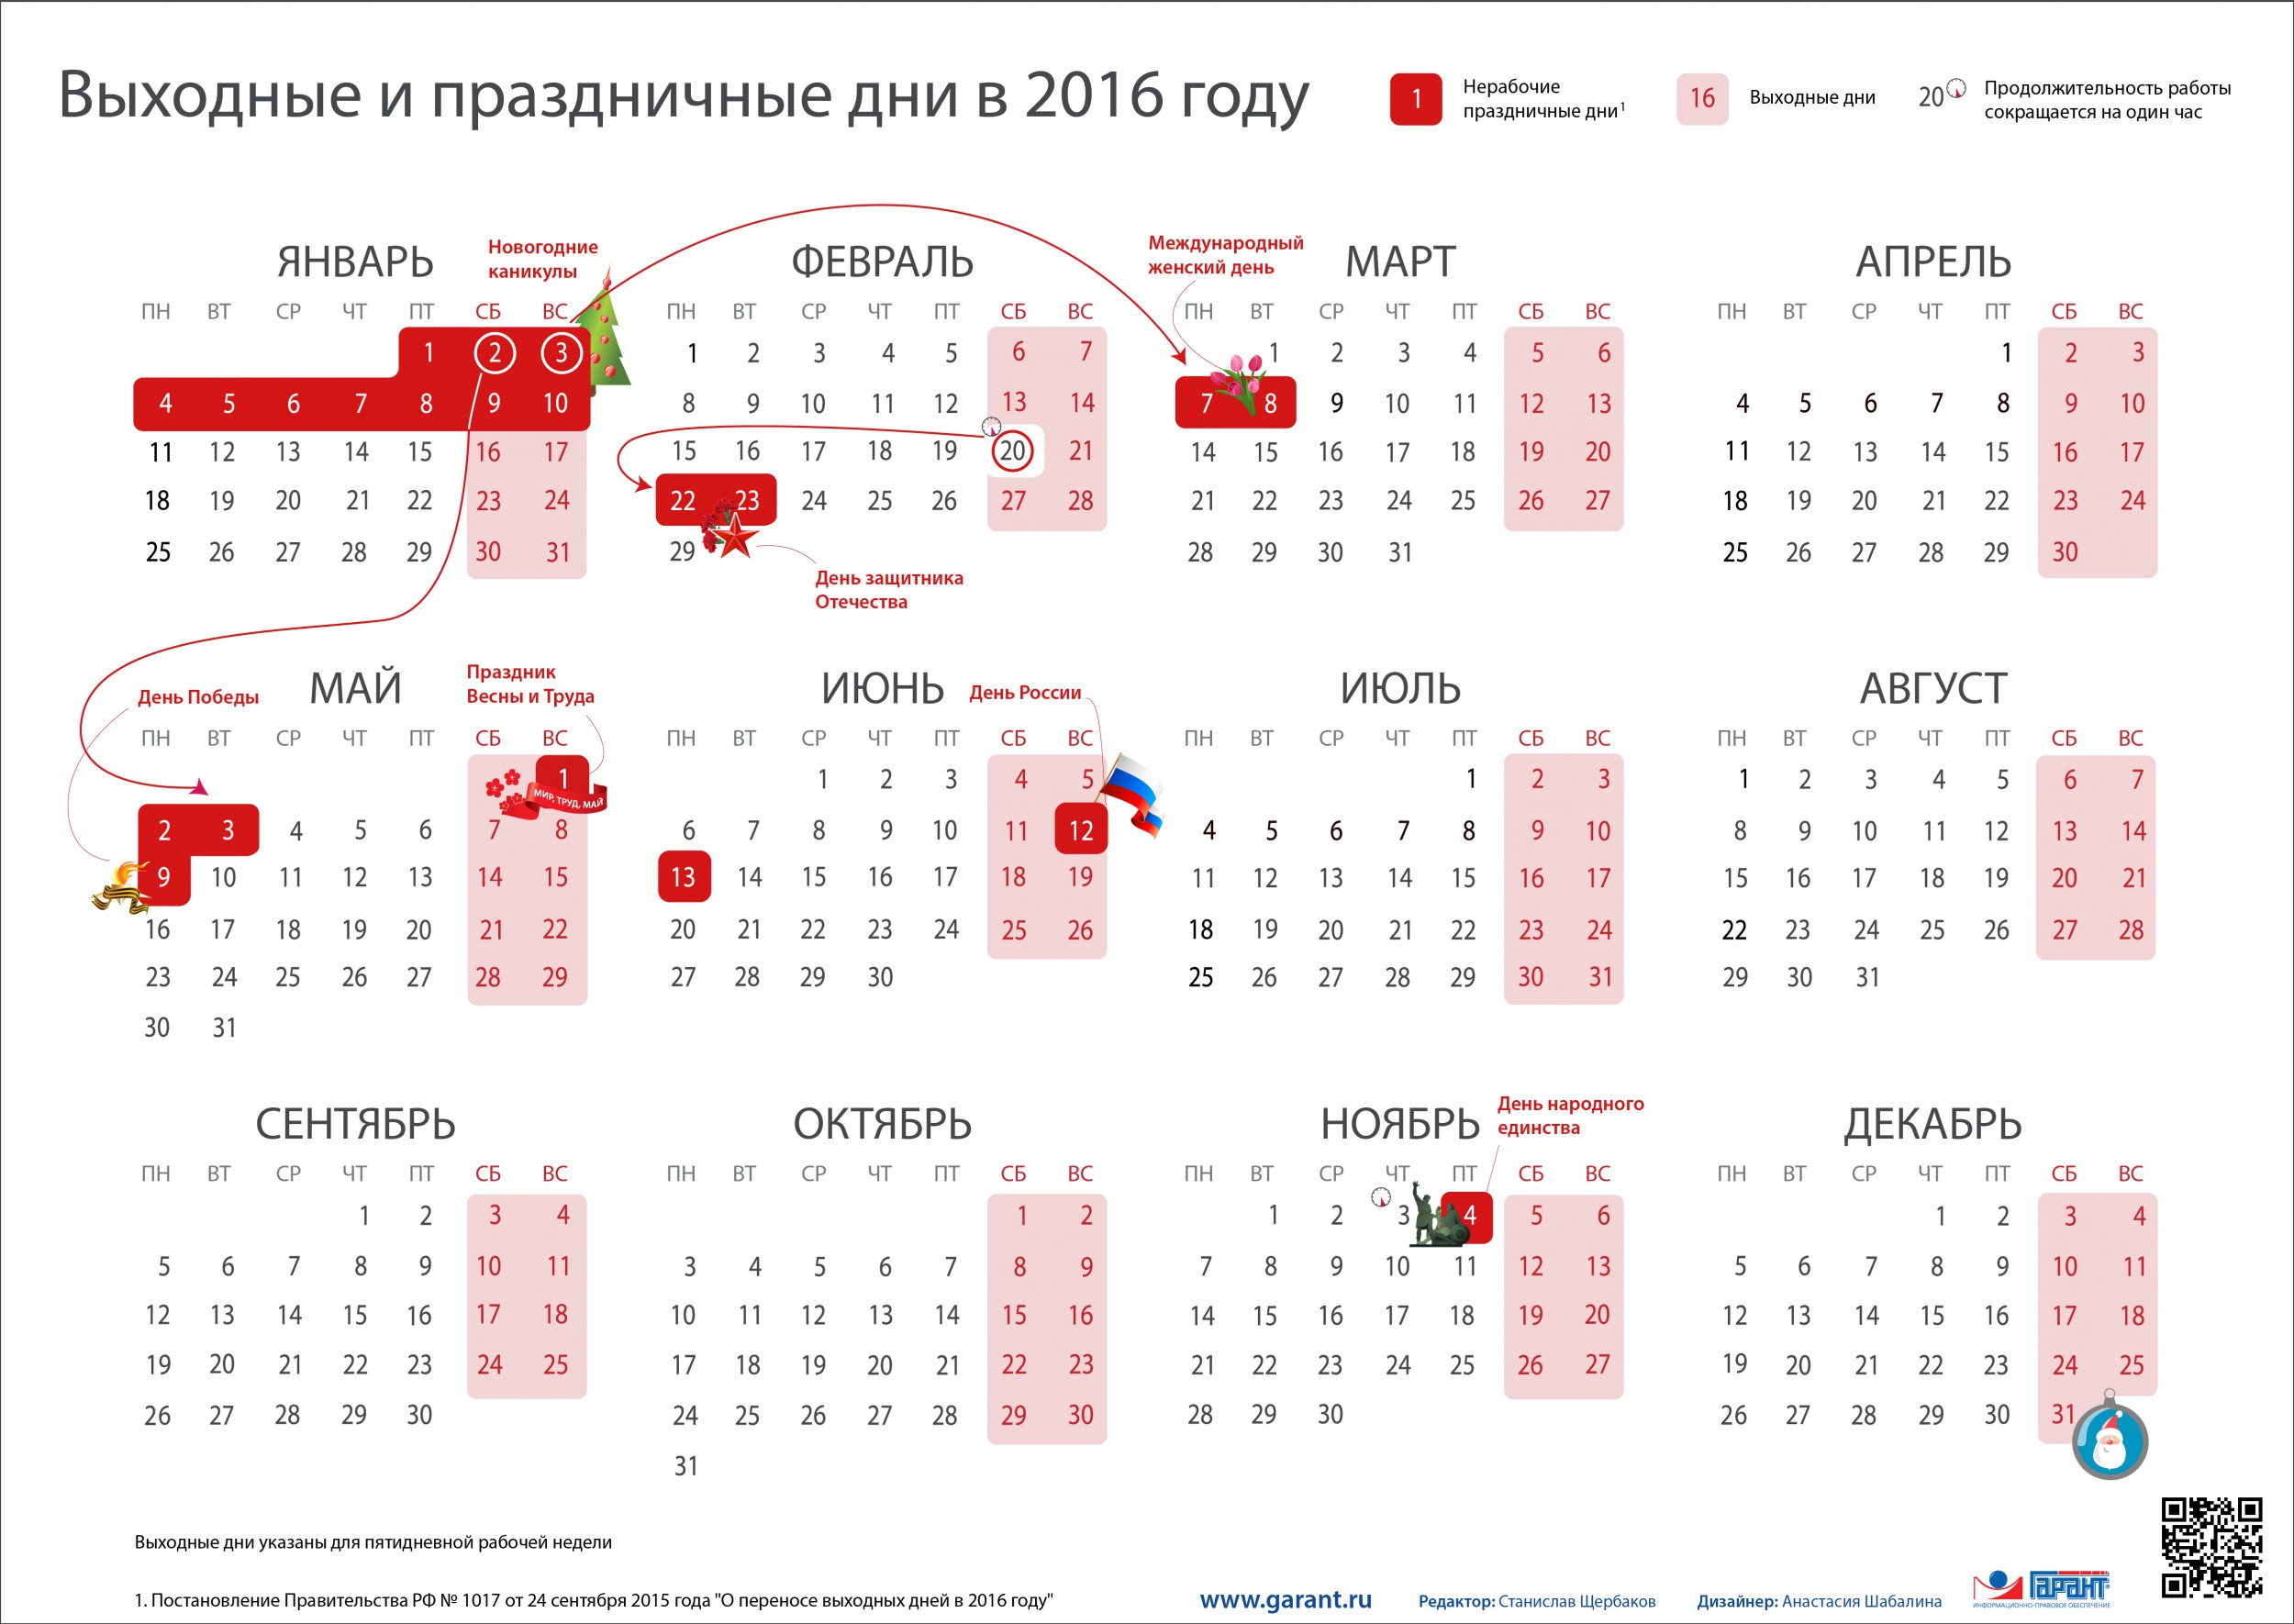 http://www.garant.ru/files/4/4/648844/kalendar_2016.jpg